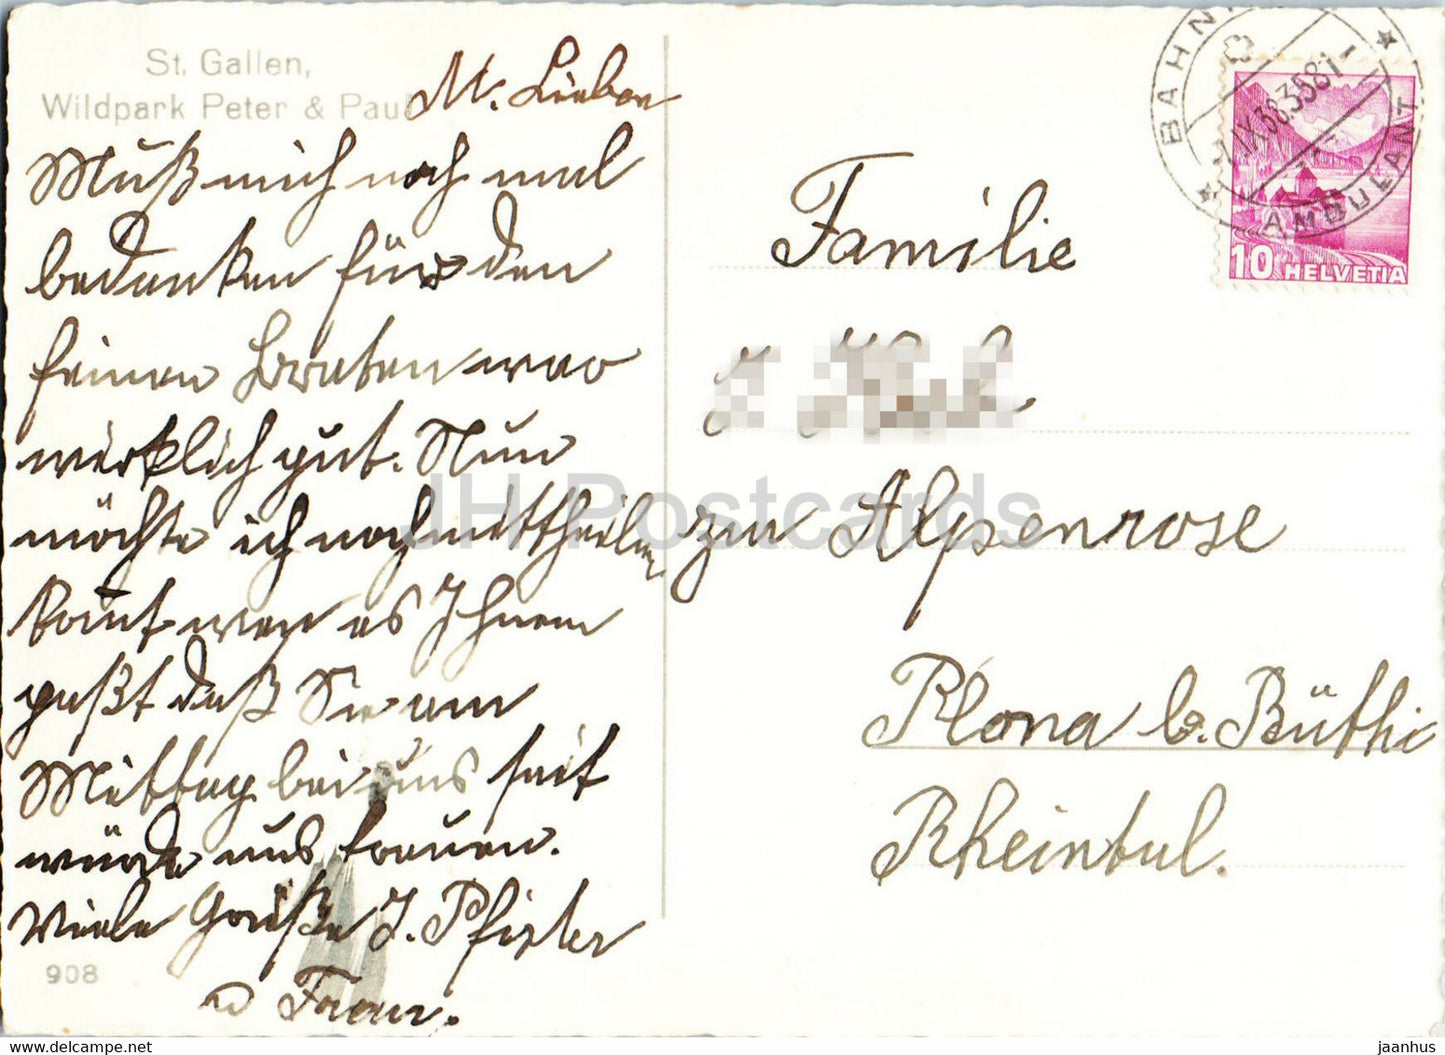 St Gallen - Wildpark Peter &amp; Paul - steinbock - cerfs - animaux - 908 - 1938 - carte postale ancienne - Suisse - utilisé